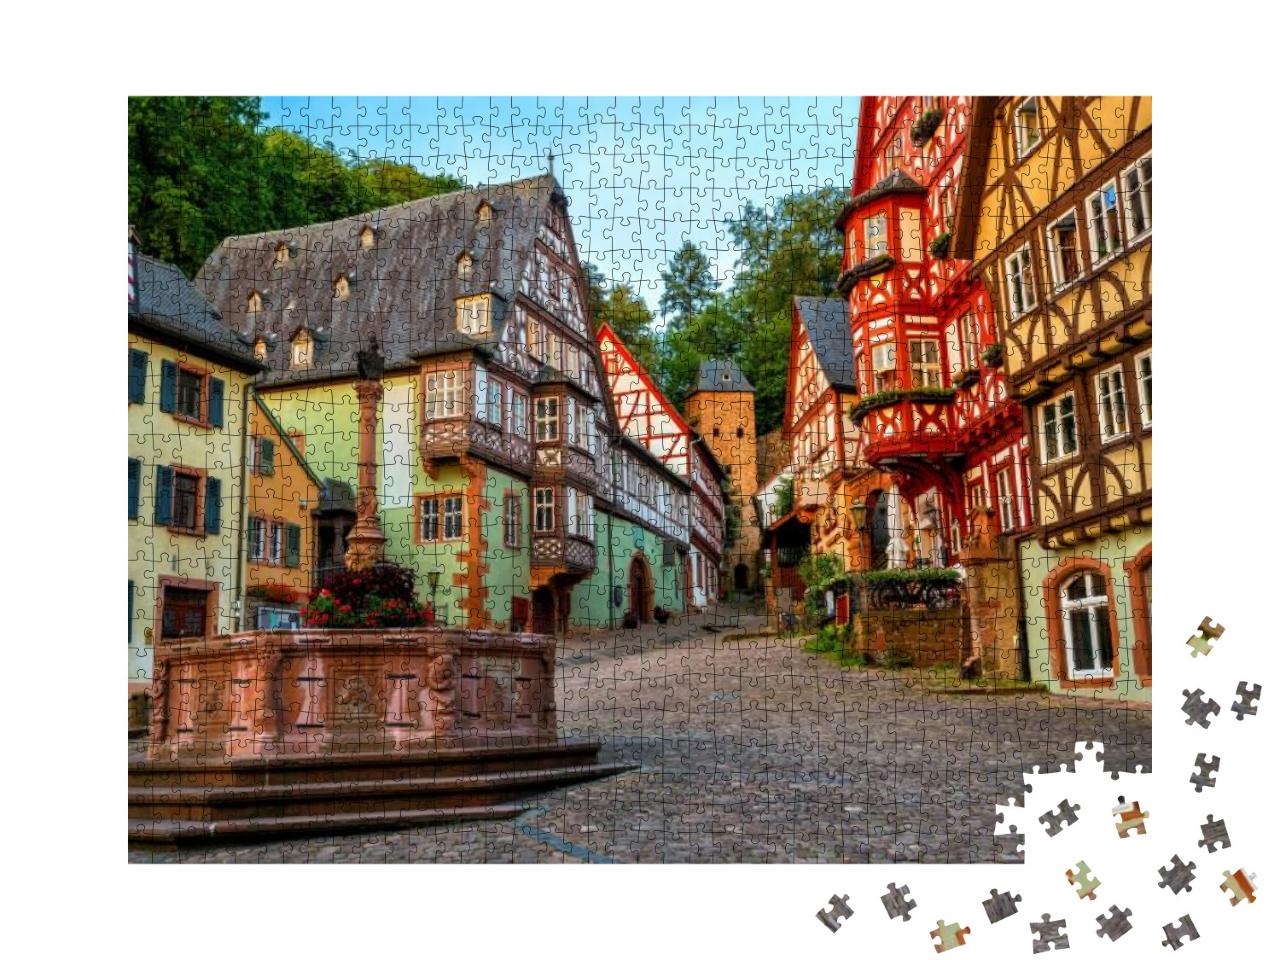 Puzzle 1000 Teile „Bunte Fachwerkhäuser von Milteberg, Bayern“